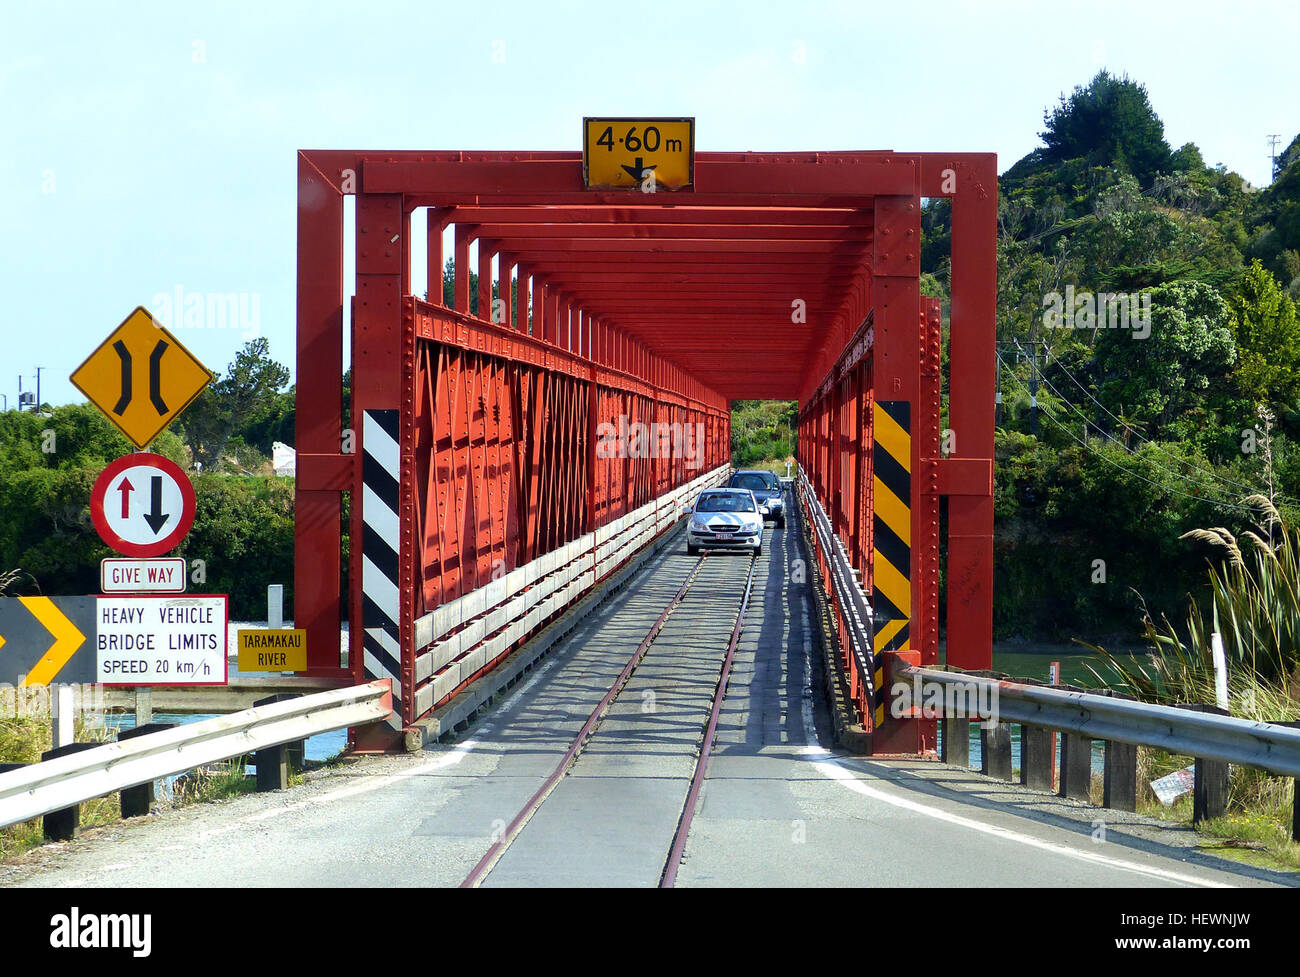 Straße, Eisenbahnbrücken der Taramakau, einspurige Straße und Schiene Brücke West Coast, Südinsel. Einige einspurige Brücken auf Neuseeland Straßen ermöglichen den Durchgang von Autofahrern und Züge.  Züge haben immer Vorfahrt.  Versuchen Sie nicht und schlagen den Zug über eine Brücke oder an einem Bahnübergang, es ist töricht und unten recht gefährlich. Stockfoto